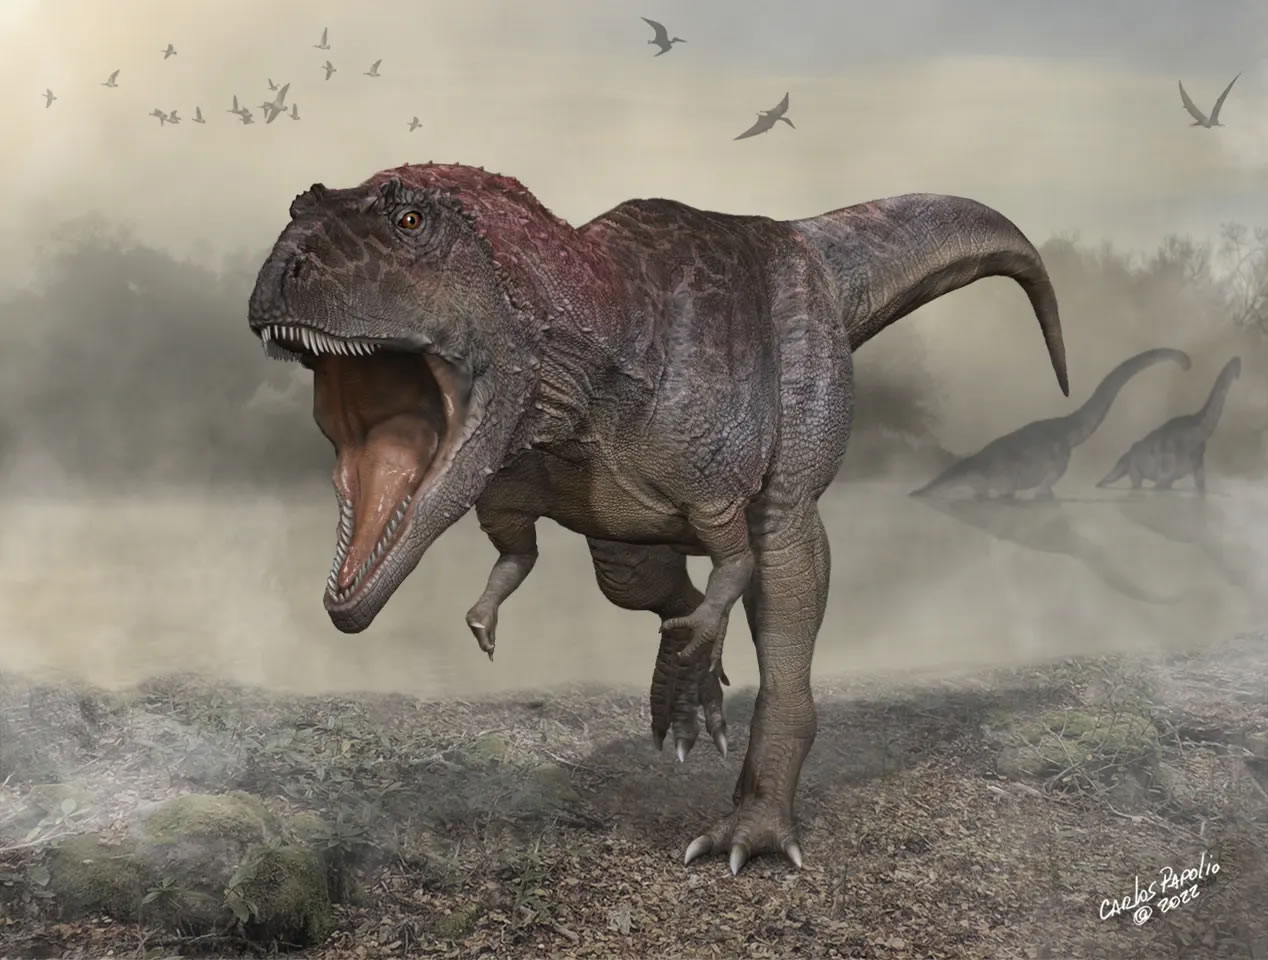 阿根廷新发现的巨型食肉恐龙”美拉克斯巨龙“有着像霸王龙那样的短小前肢